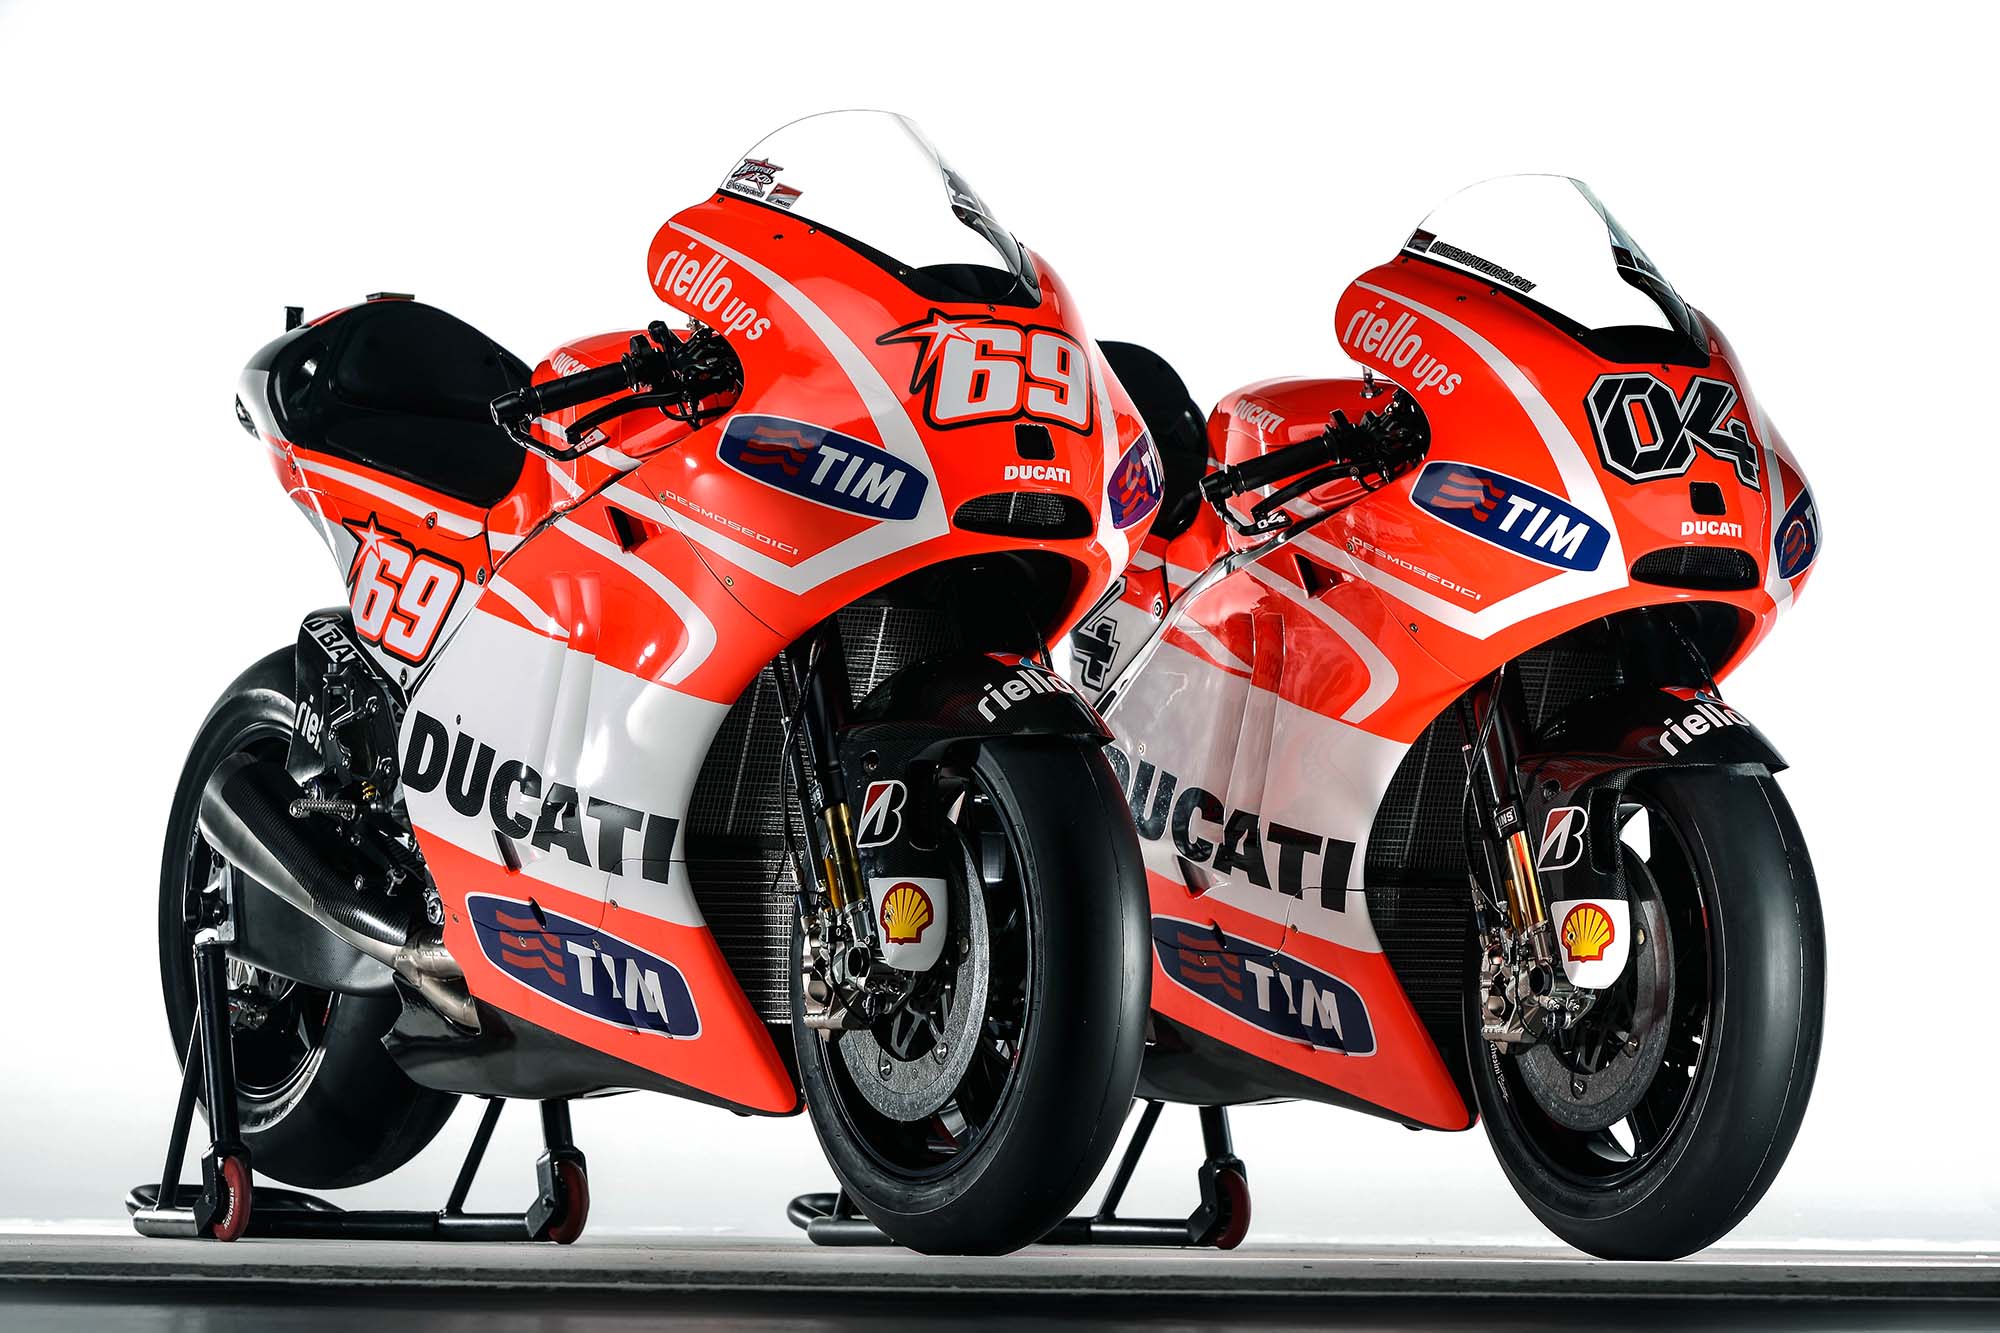 MotoGP, Foto Motor Ducati Desmosedici GP13 untuk MotoGP 2013: Spesifikasi dan Foto Motor Ducati Desmosedici GP13